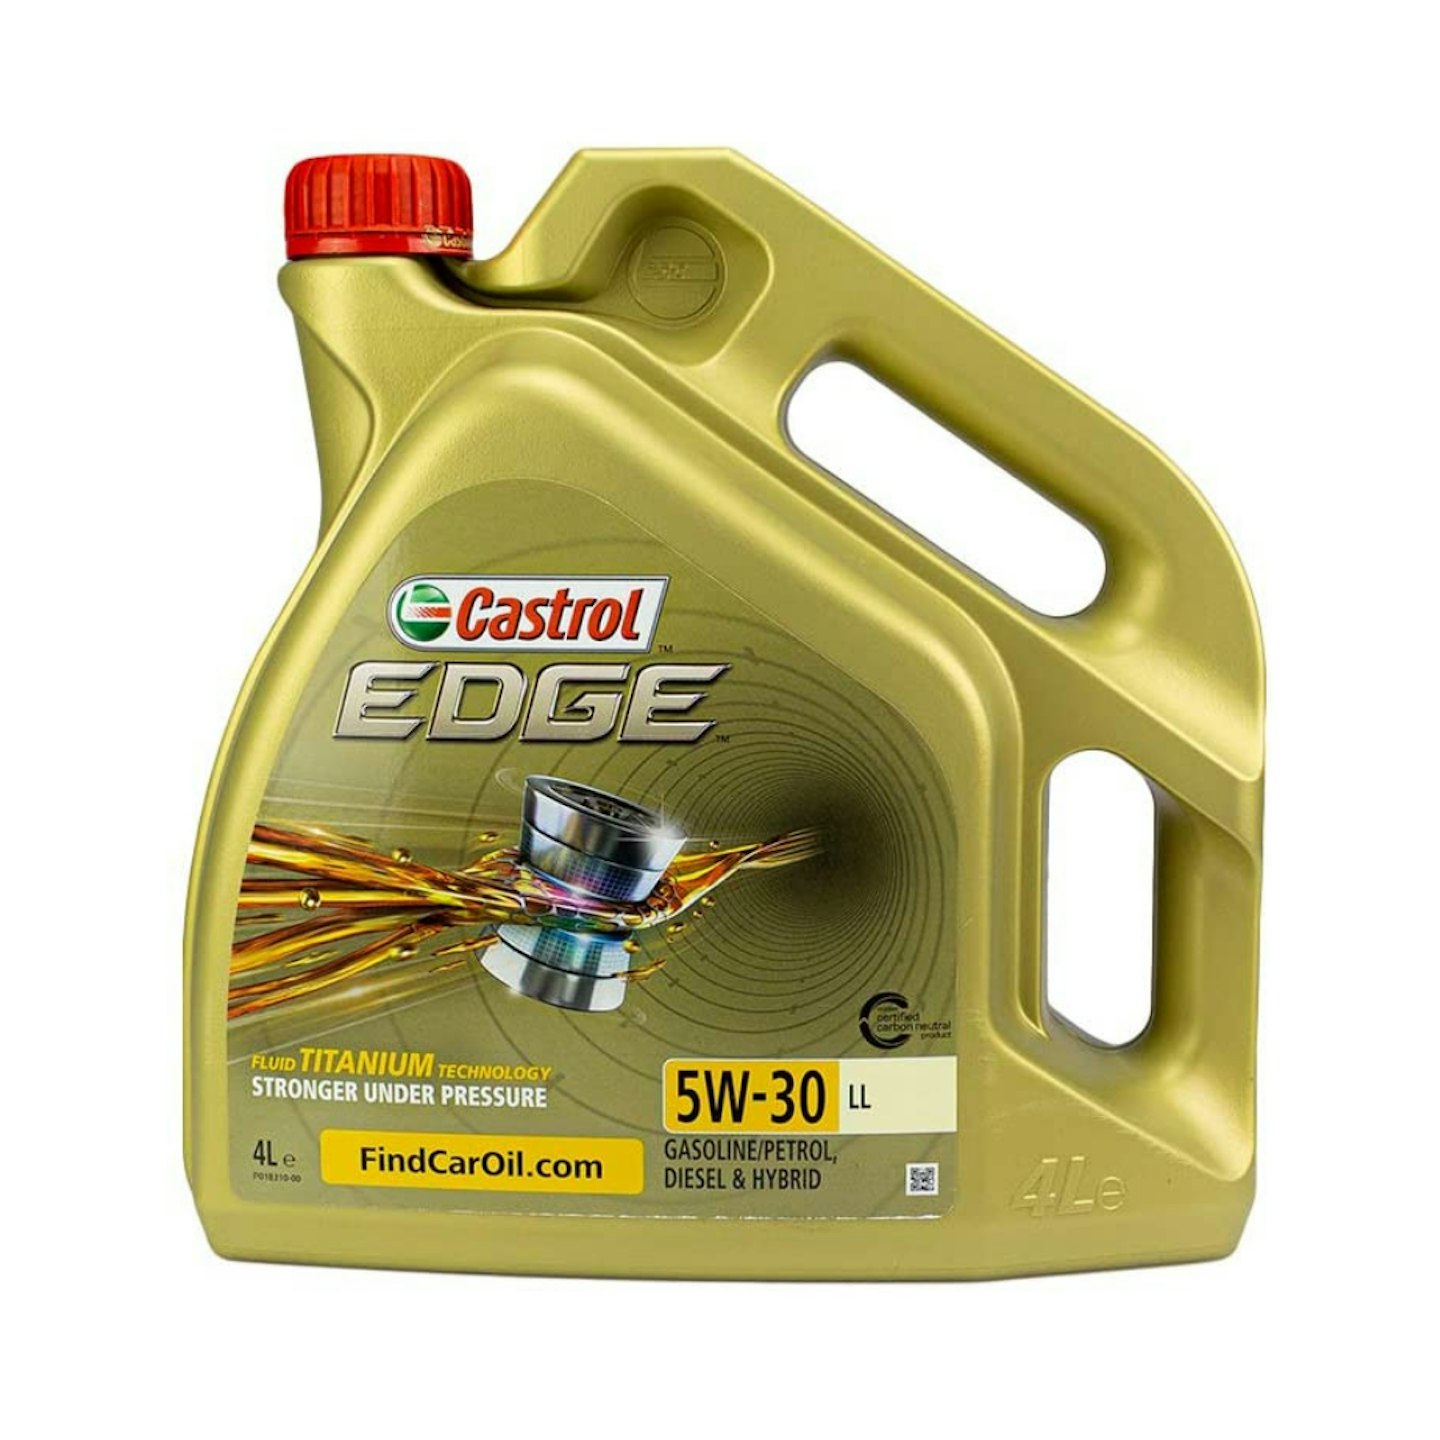 Castrol EDGE 5W-30 LL Engine Oil